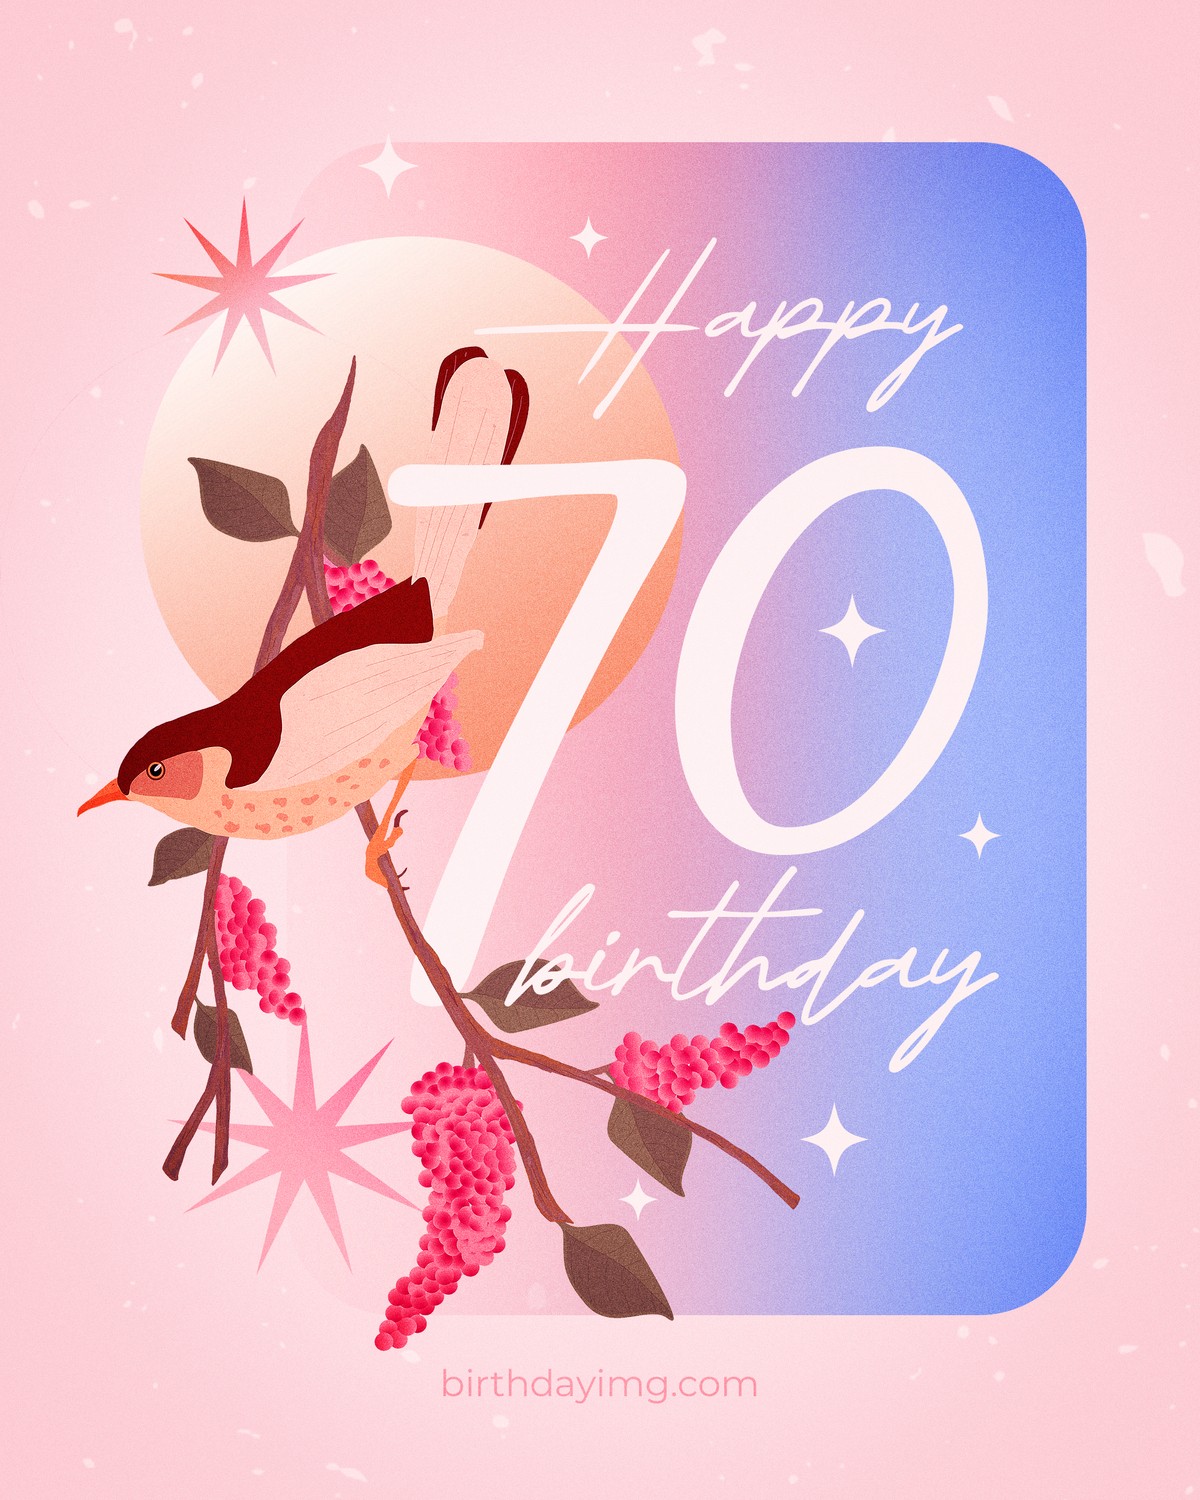 Free 70 Years Happy Birthday Picture with Bird - birthdayimg.com